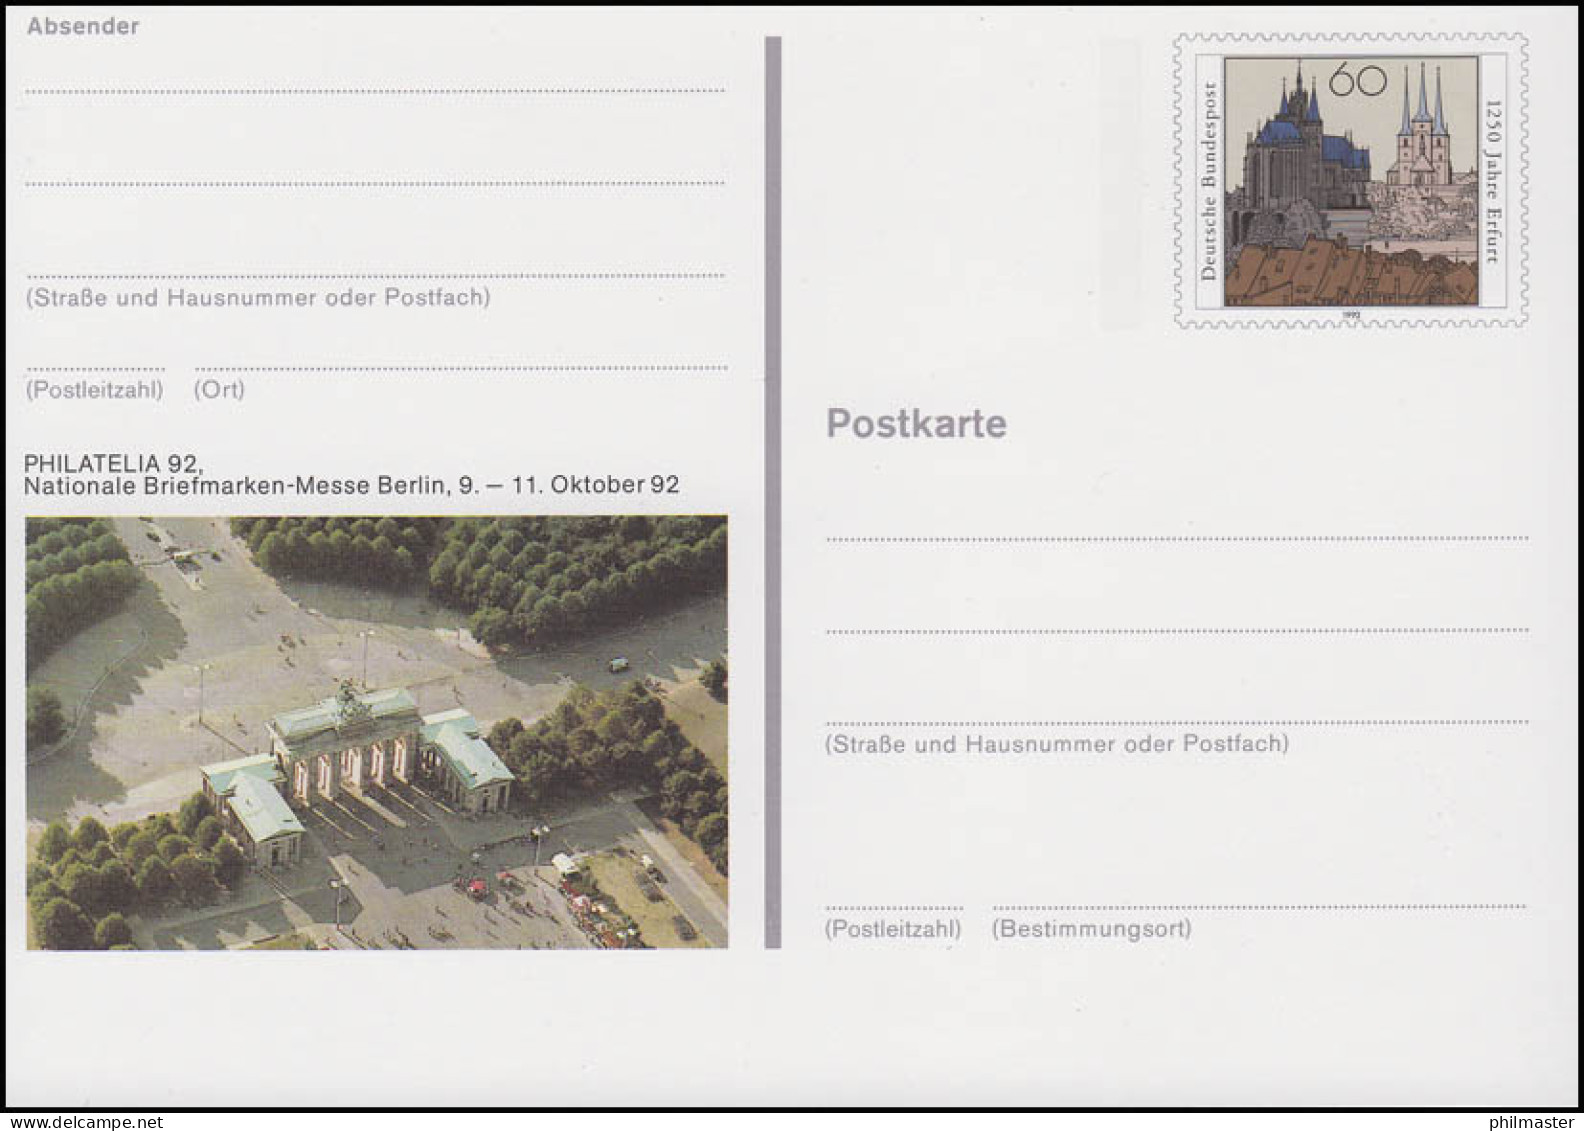 PSo 28 Briefmarken-Messe PHILATELIA Berlin 1992, ** - Postkaarten - Ongebruikt